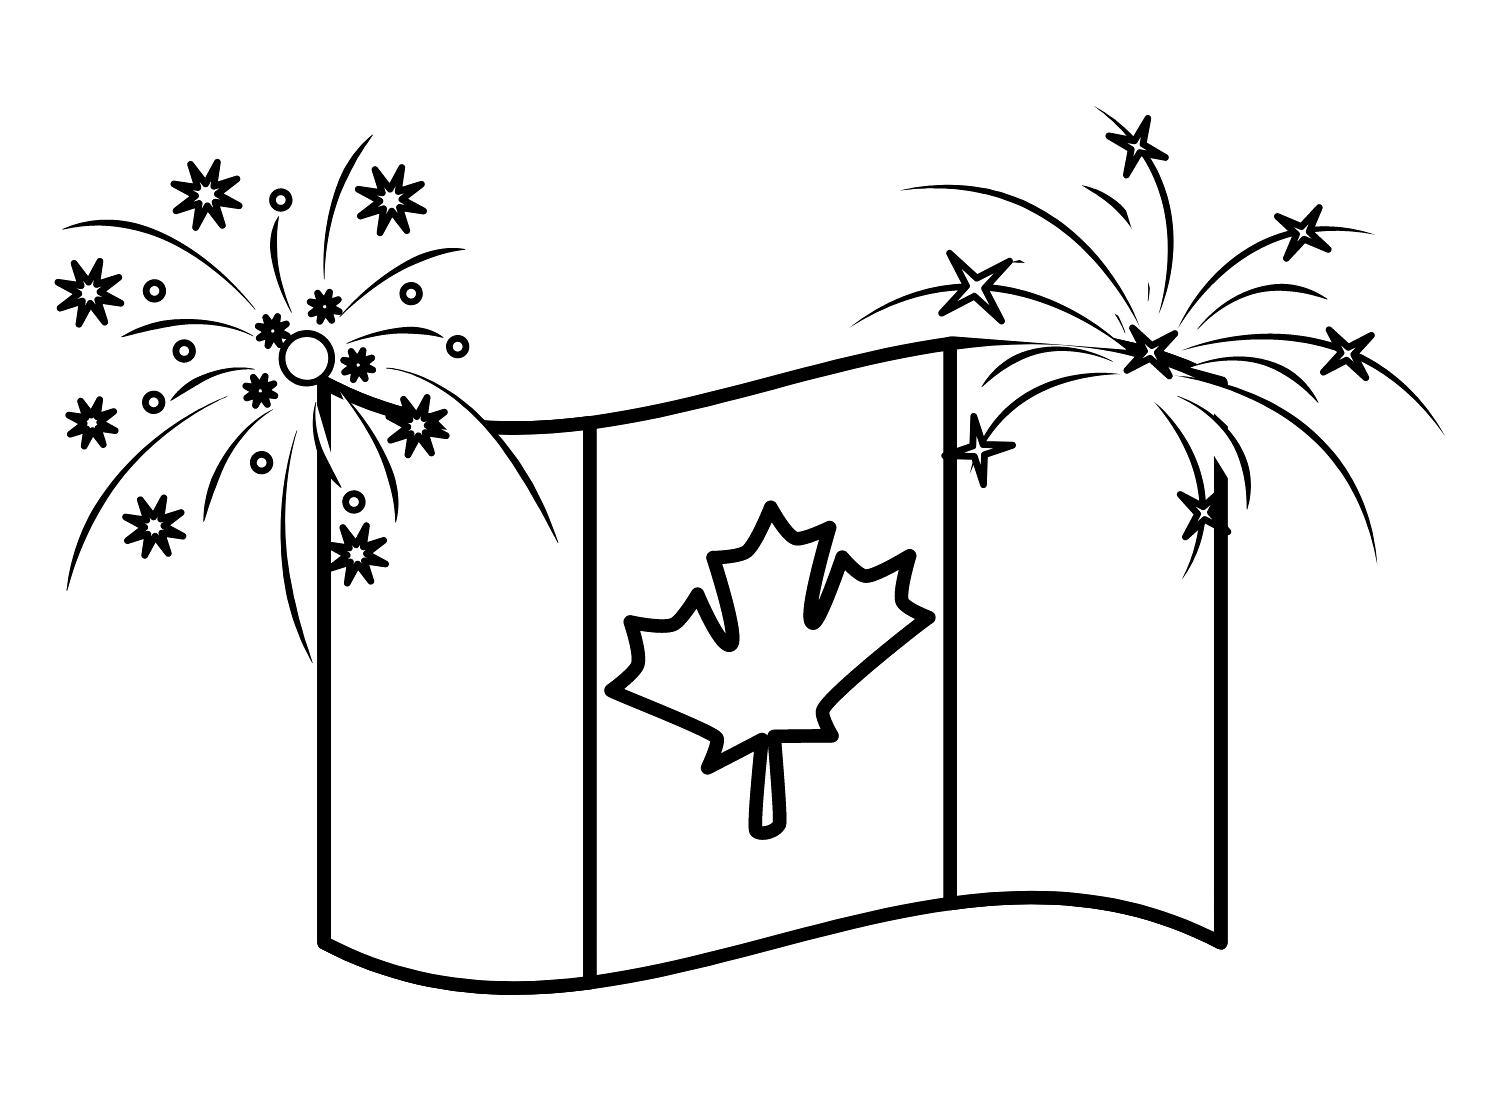 العلم الكندي مع الألعاب النارية من كندا